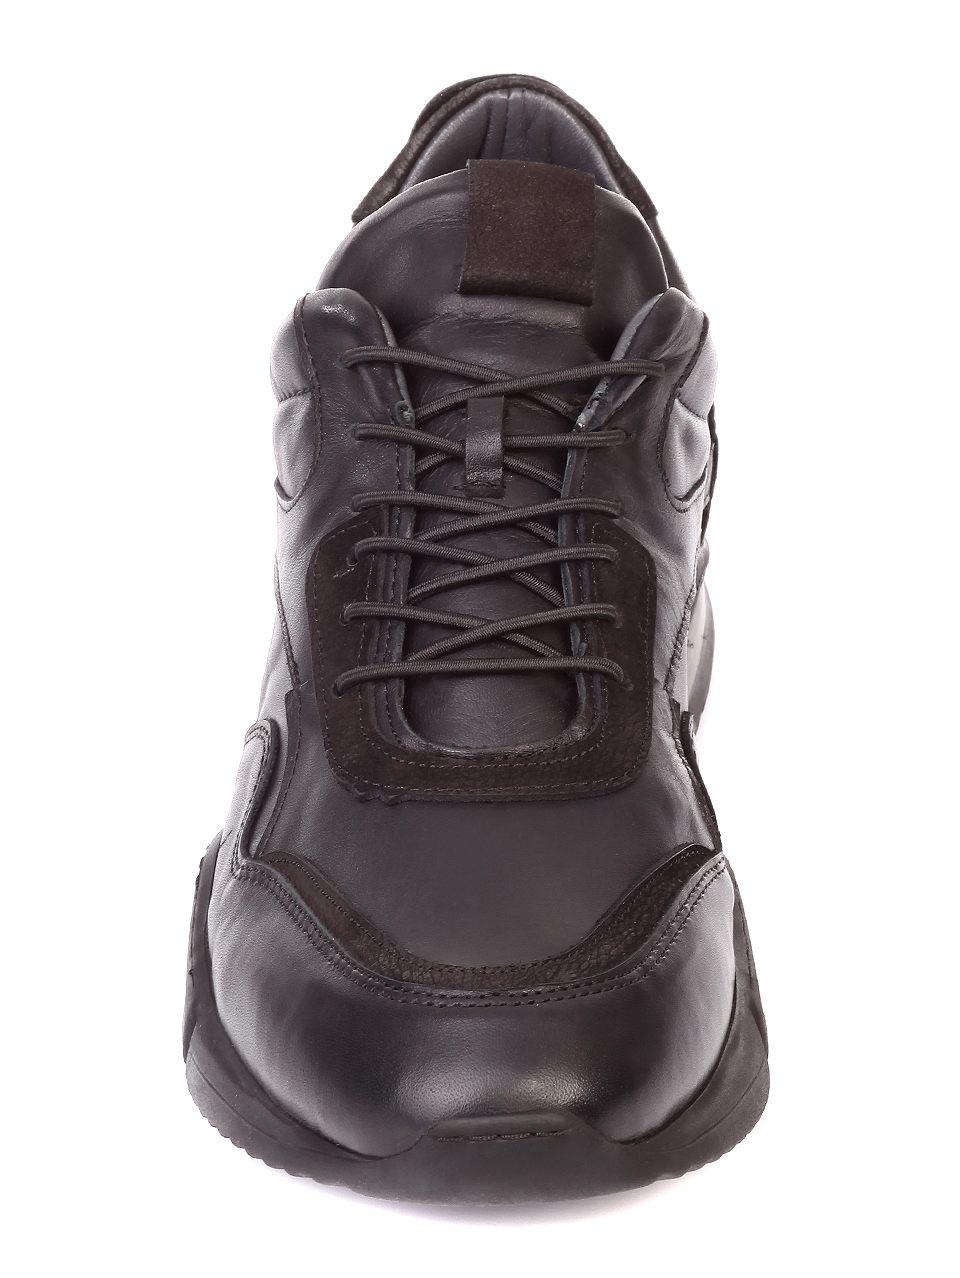 Ежедневни мъжки обувки от естествена кожа 7AT-19950 black